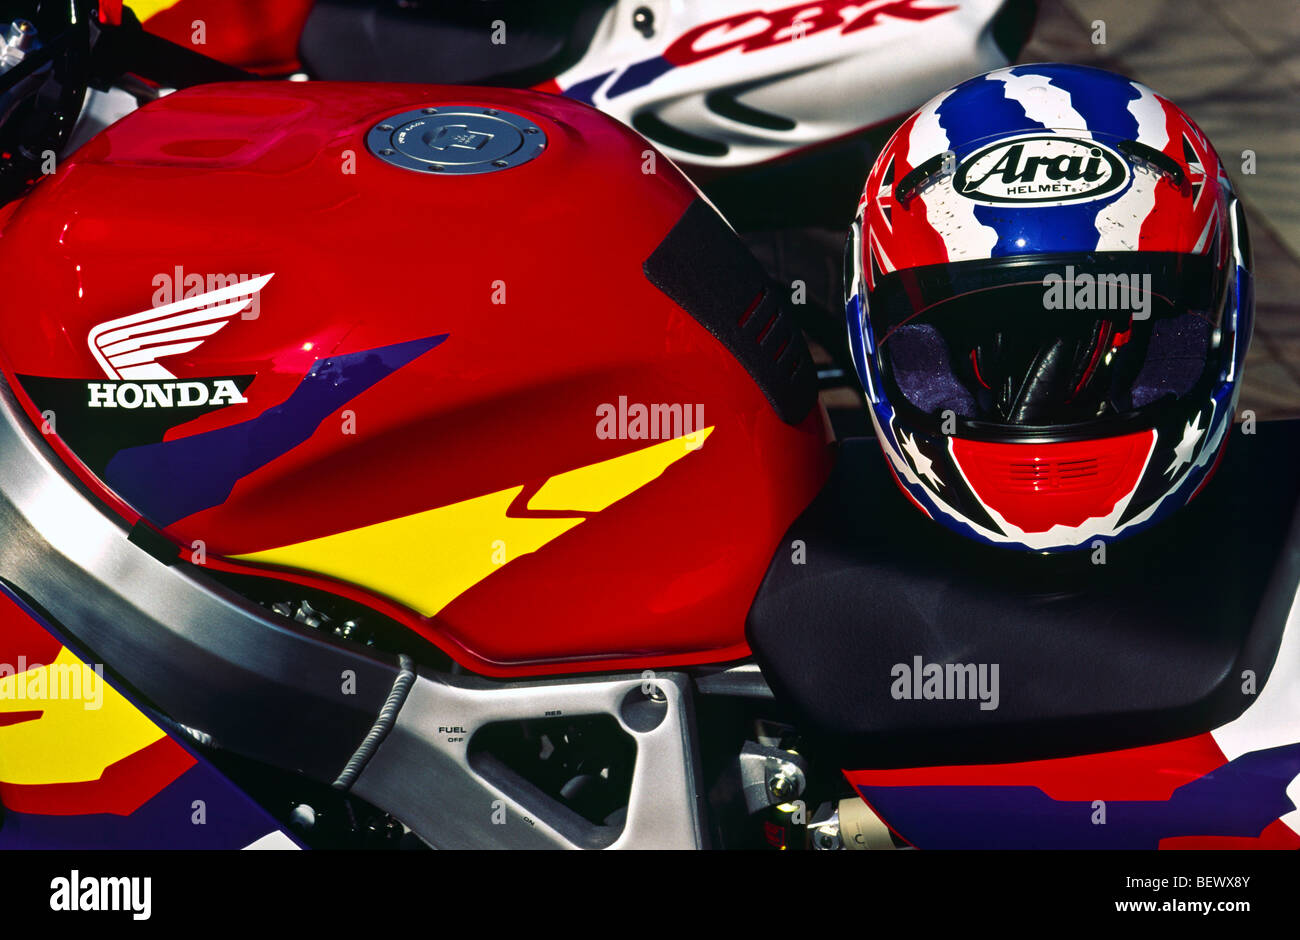 Moto Honda casque Arai et réservoir de carburant Photo Stock - Alamy